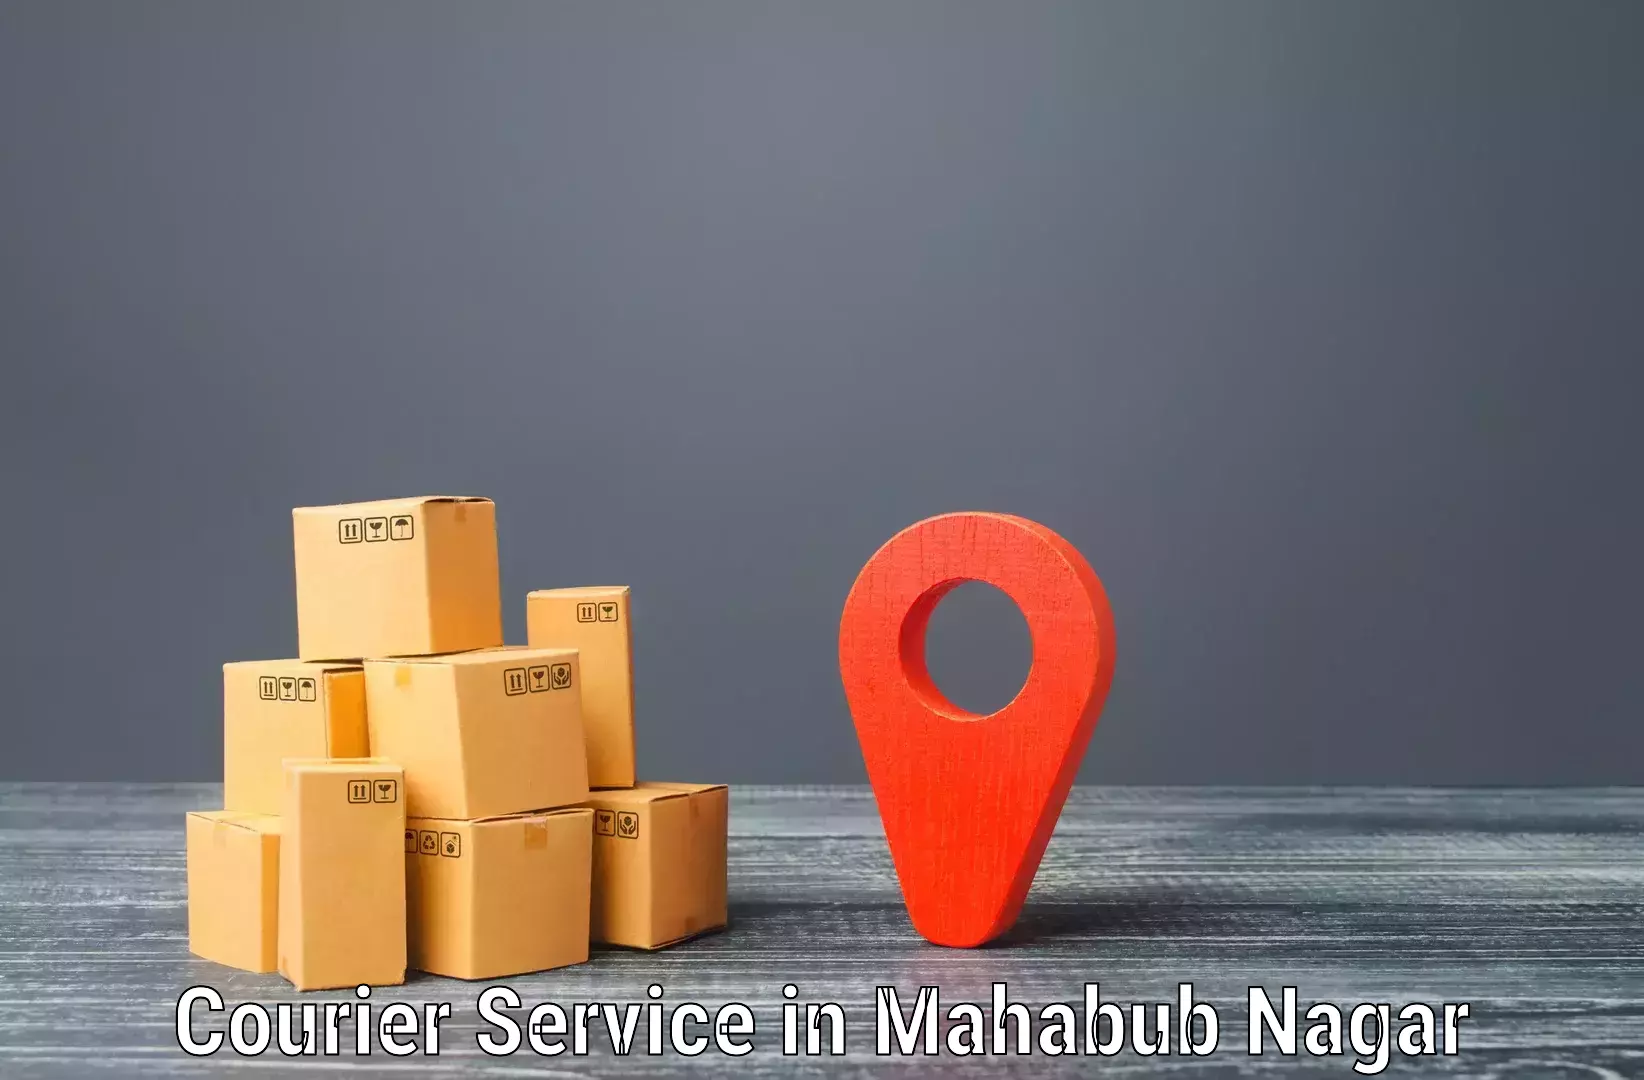 Regular parcel service in Mahabub Nagar